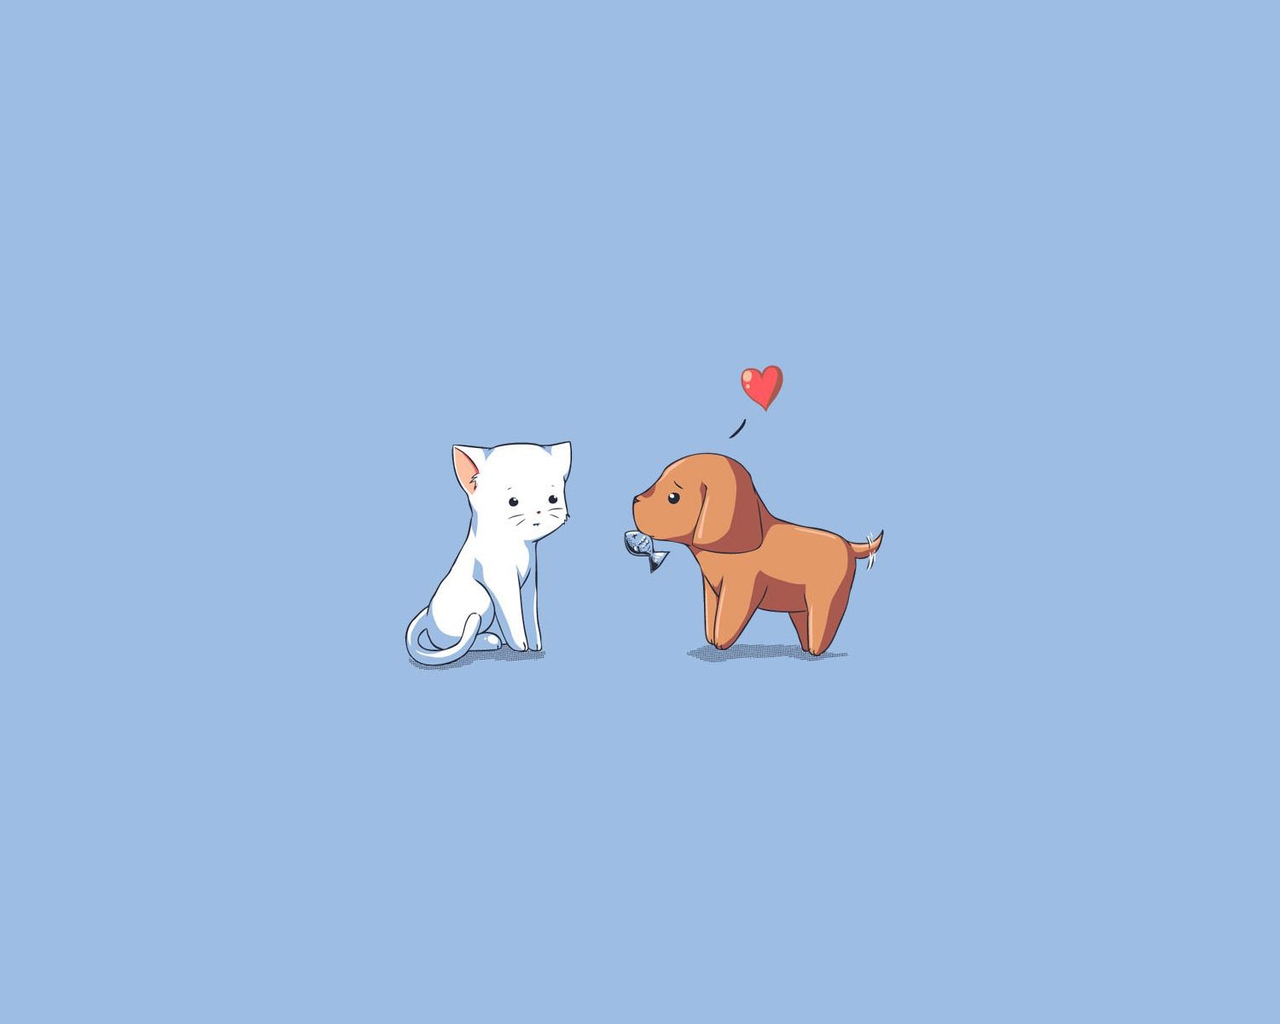 Image: Cat, dog, heart, fish, gift, background